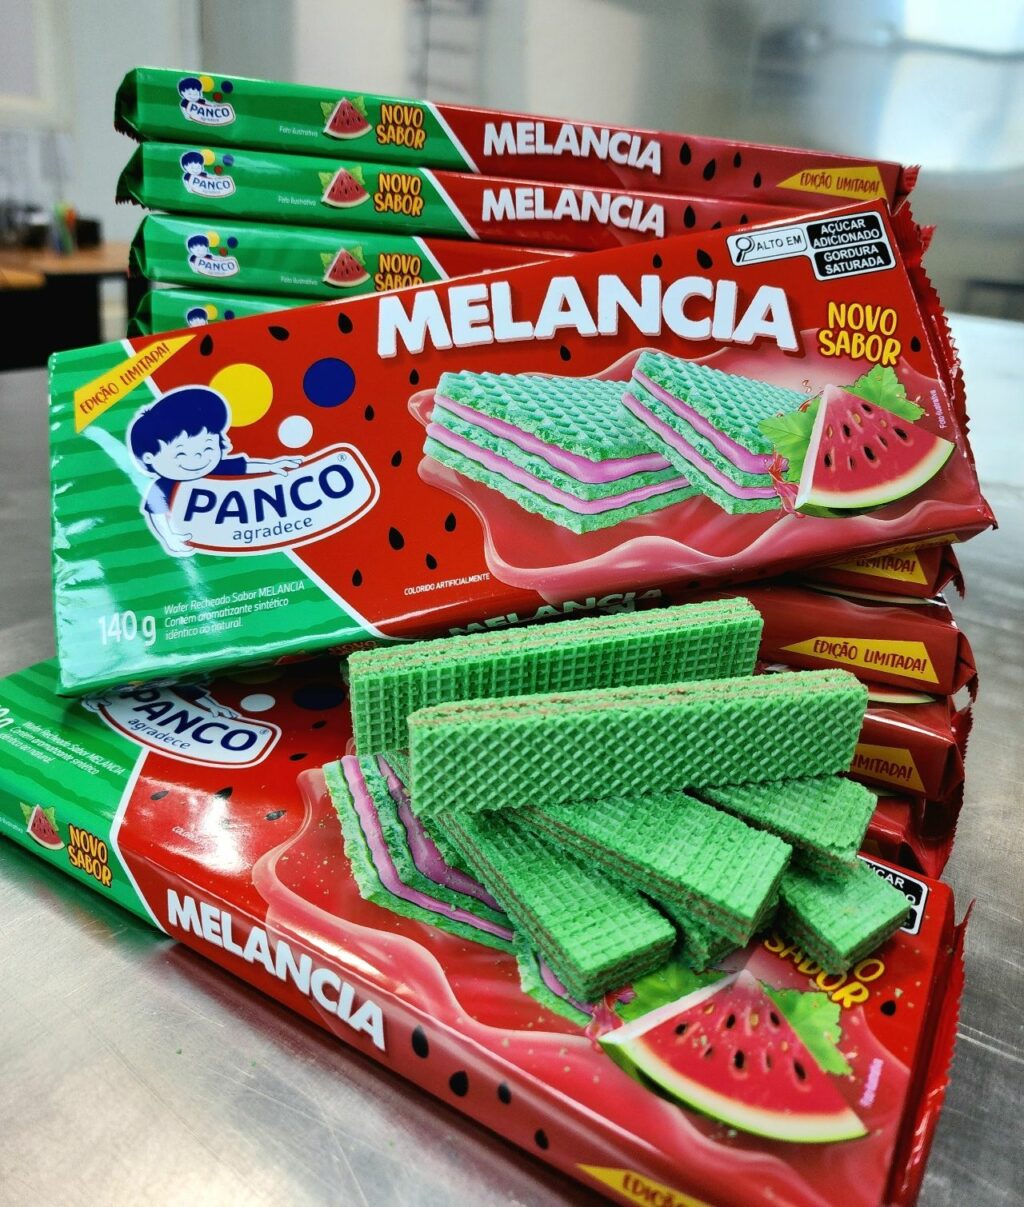 Panco lança Wafer recheado sabor Melancia em edição limitada